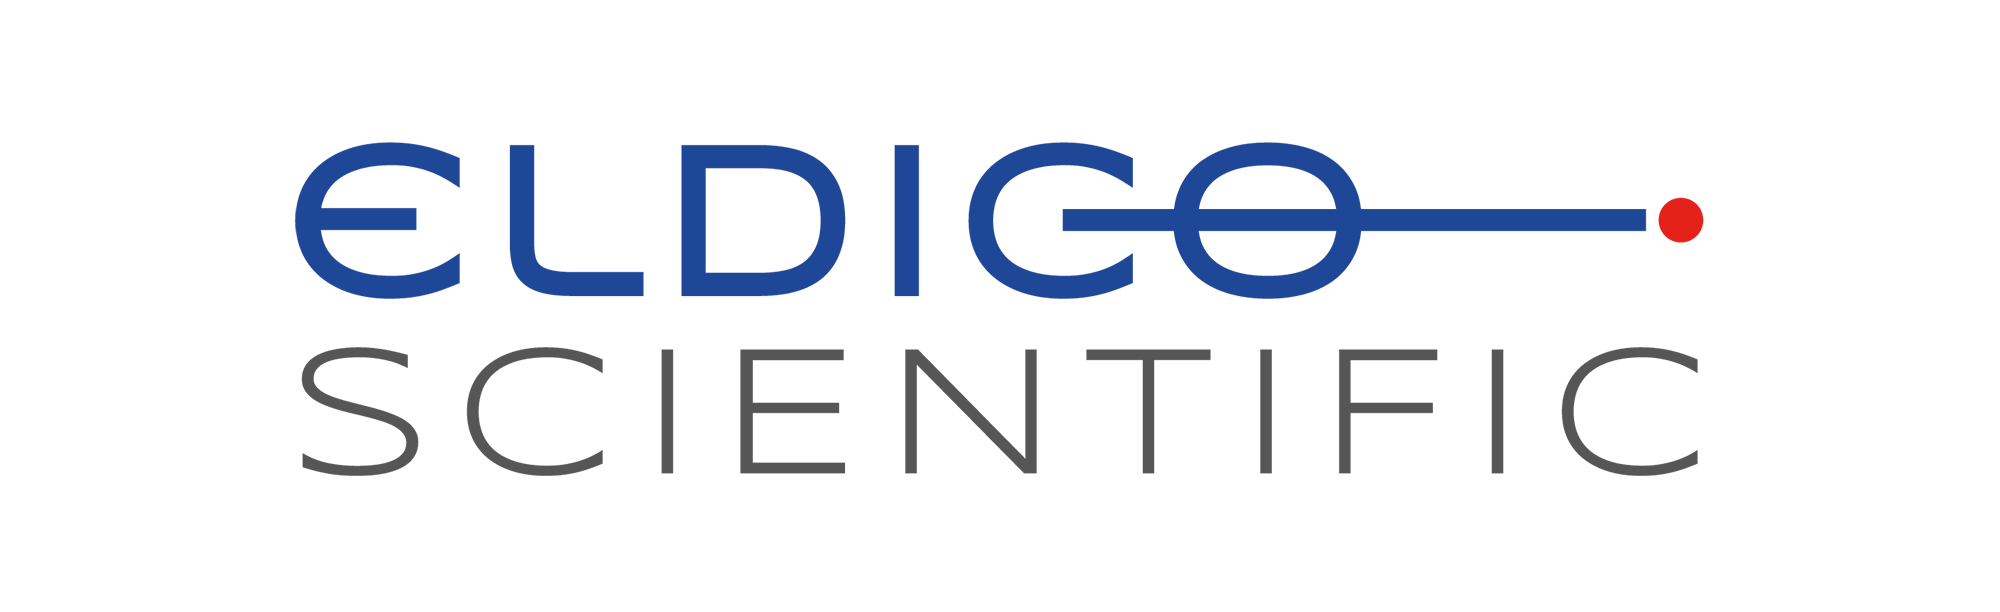 ELDICO Scientific AG is incorporated